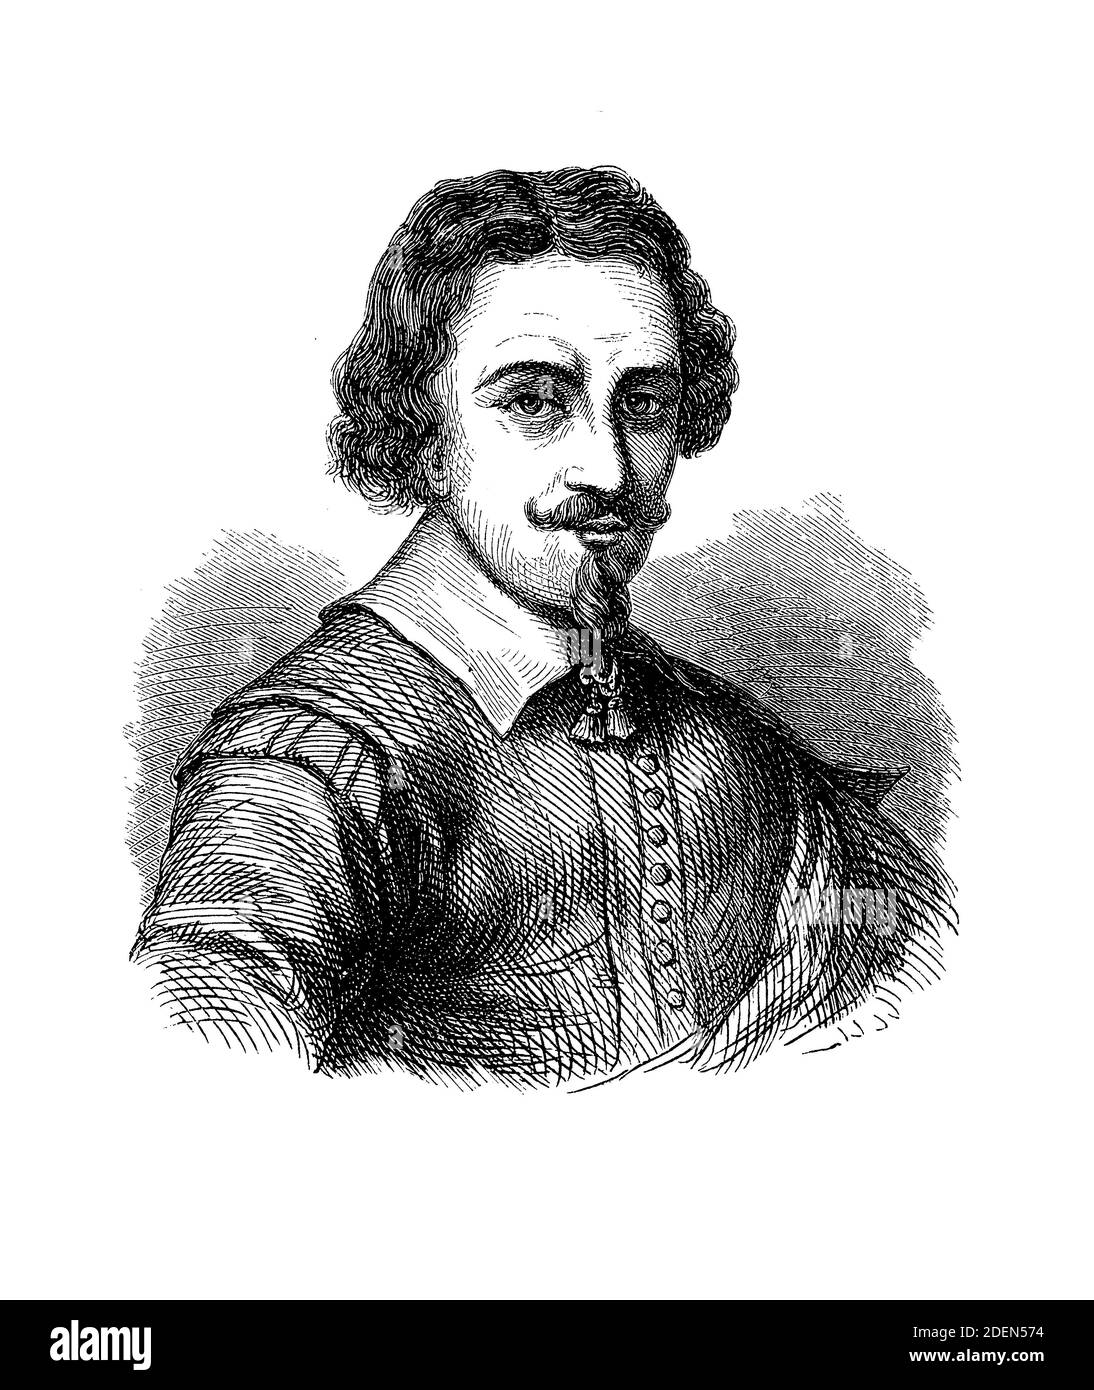 Zacharias Jansen (1585-1632) Niederländischer Hersteller von Brillen und optischen Geräten, bekannt für die erste Erfindung des optischen Teleskops und Verbundteleskops Stockfoto